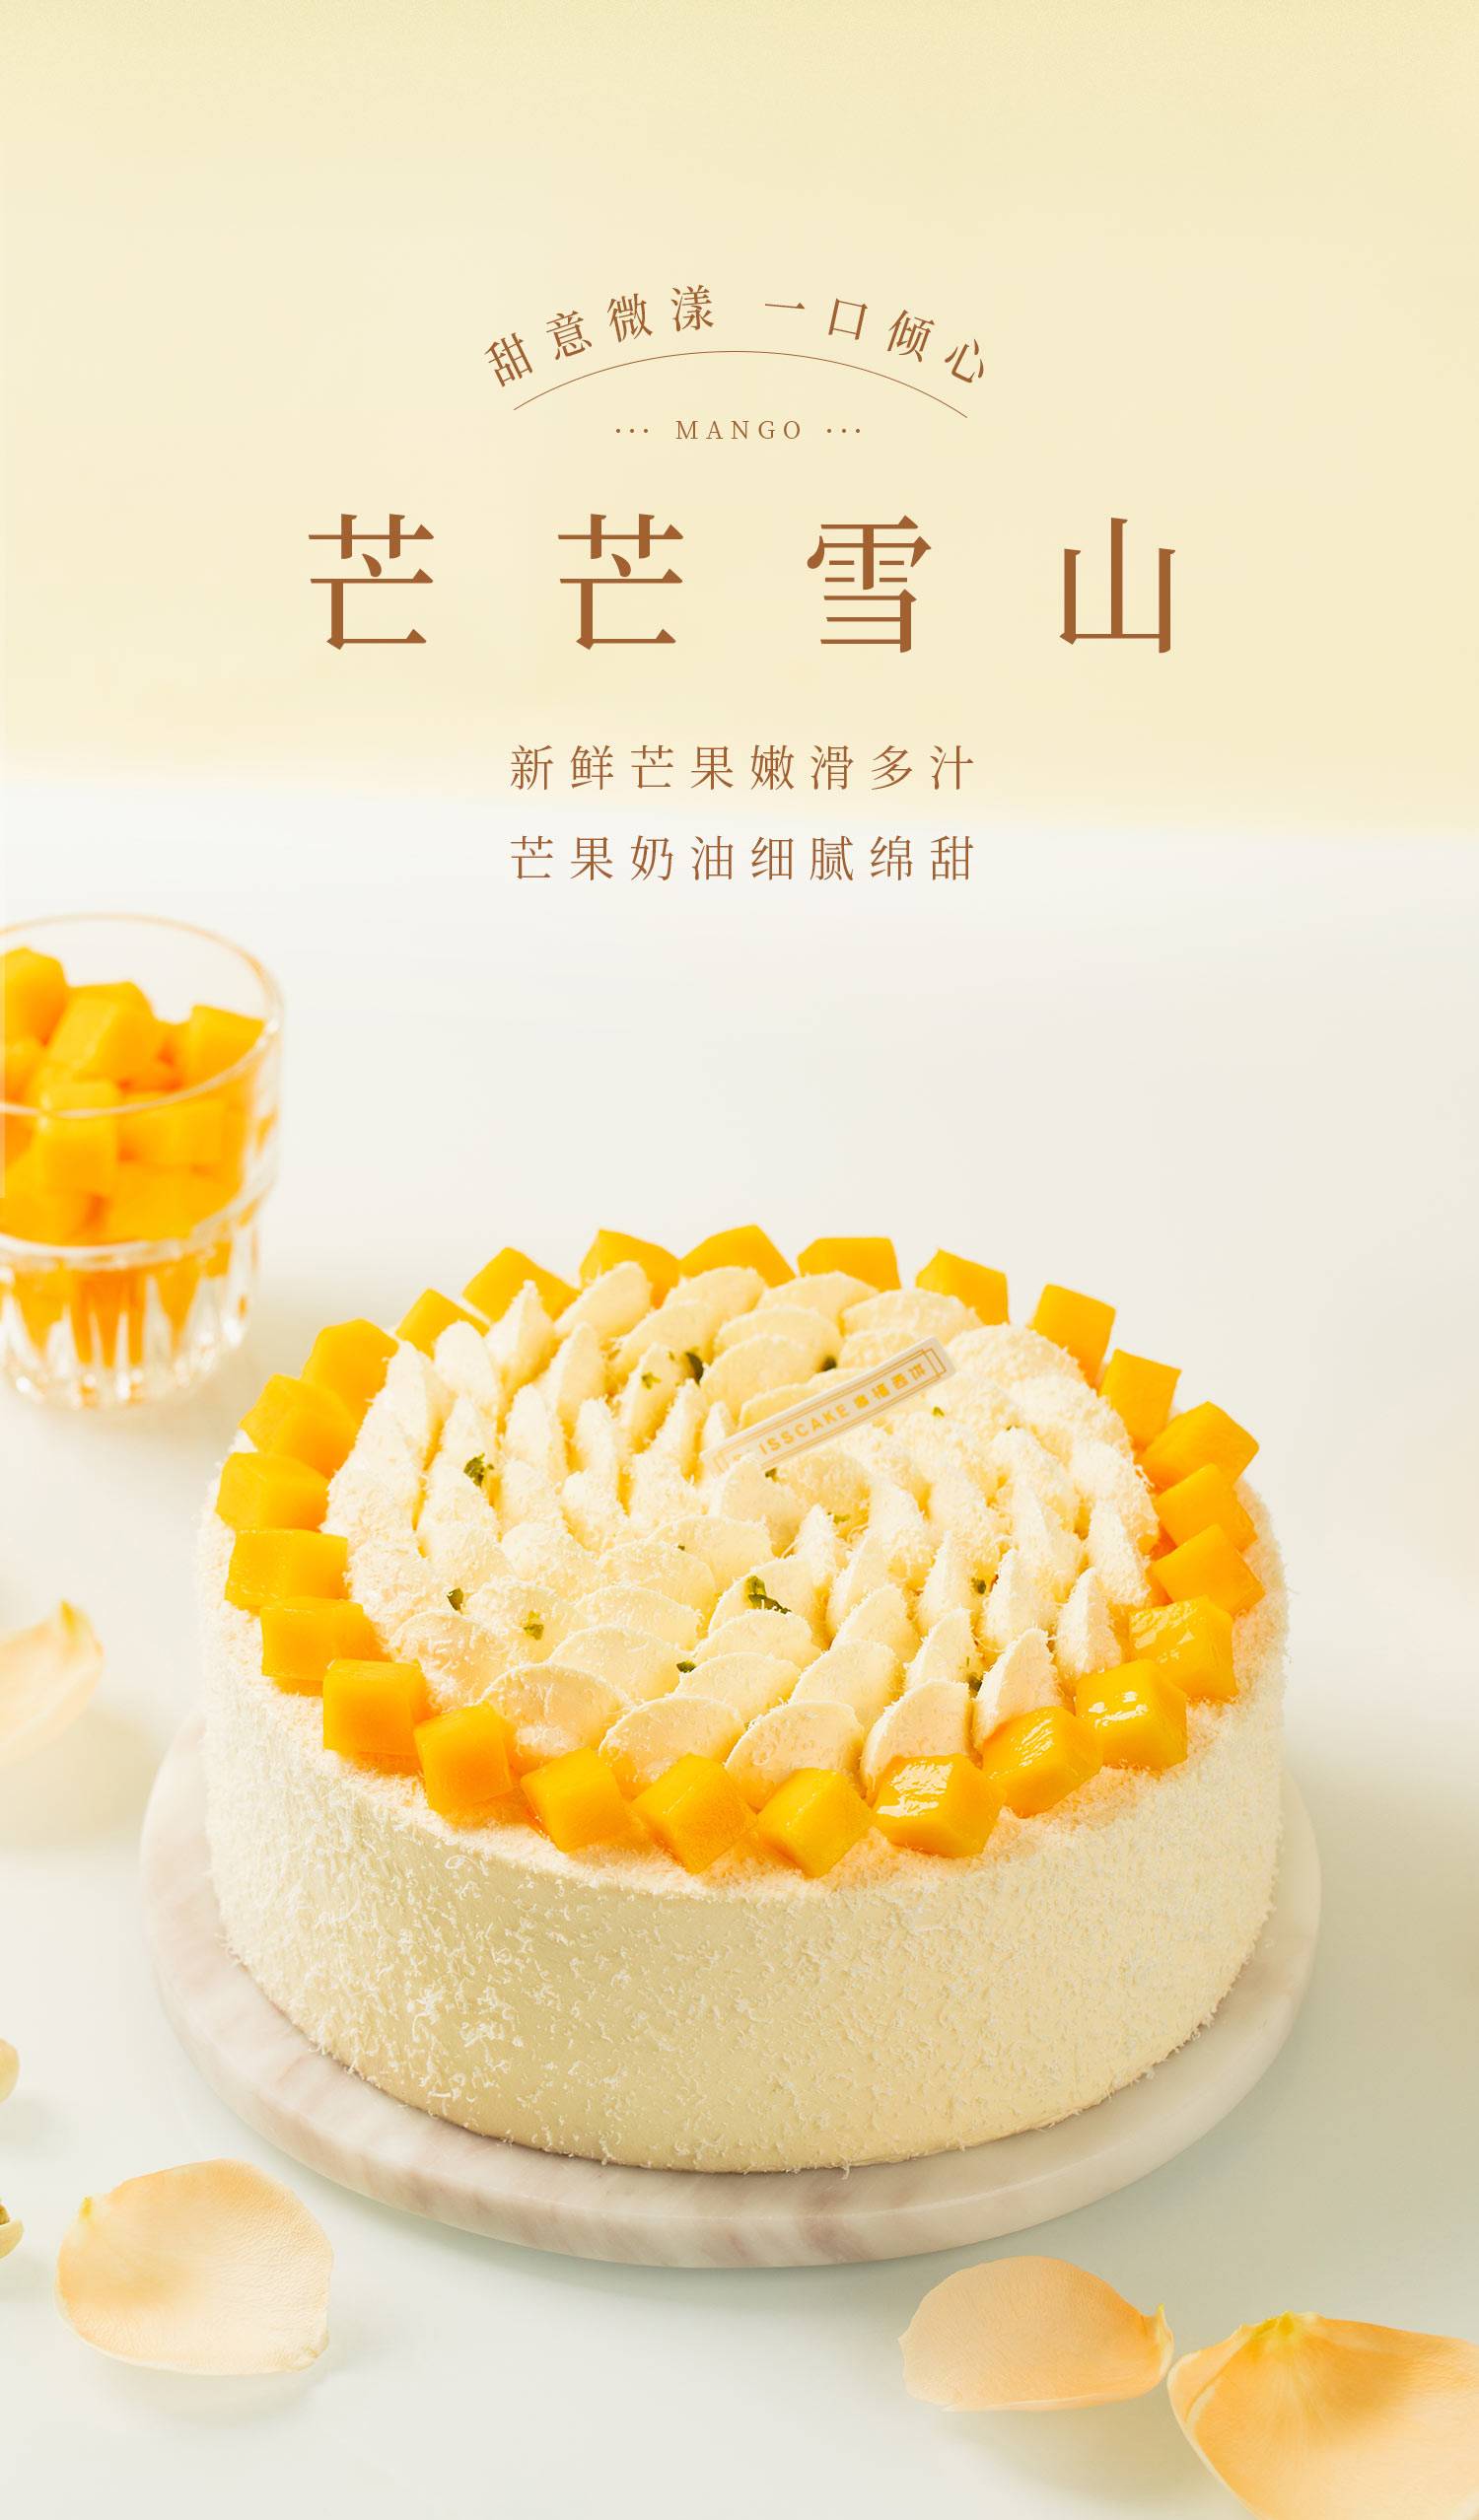 芒果冰淇淋慕斯_幸福西饼蛋糕预定_加盟幸福西饼_深圳幸福西饼官方网站